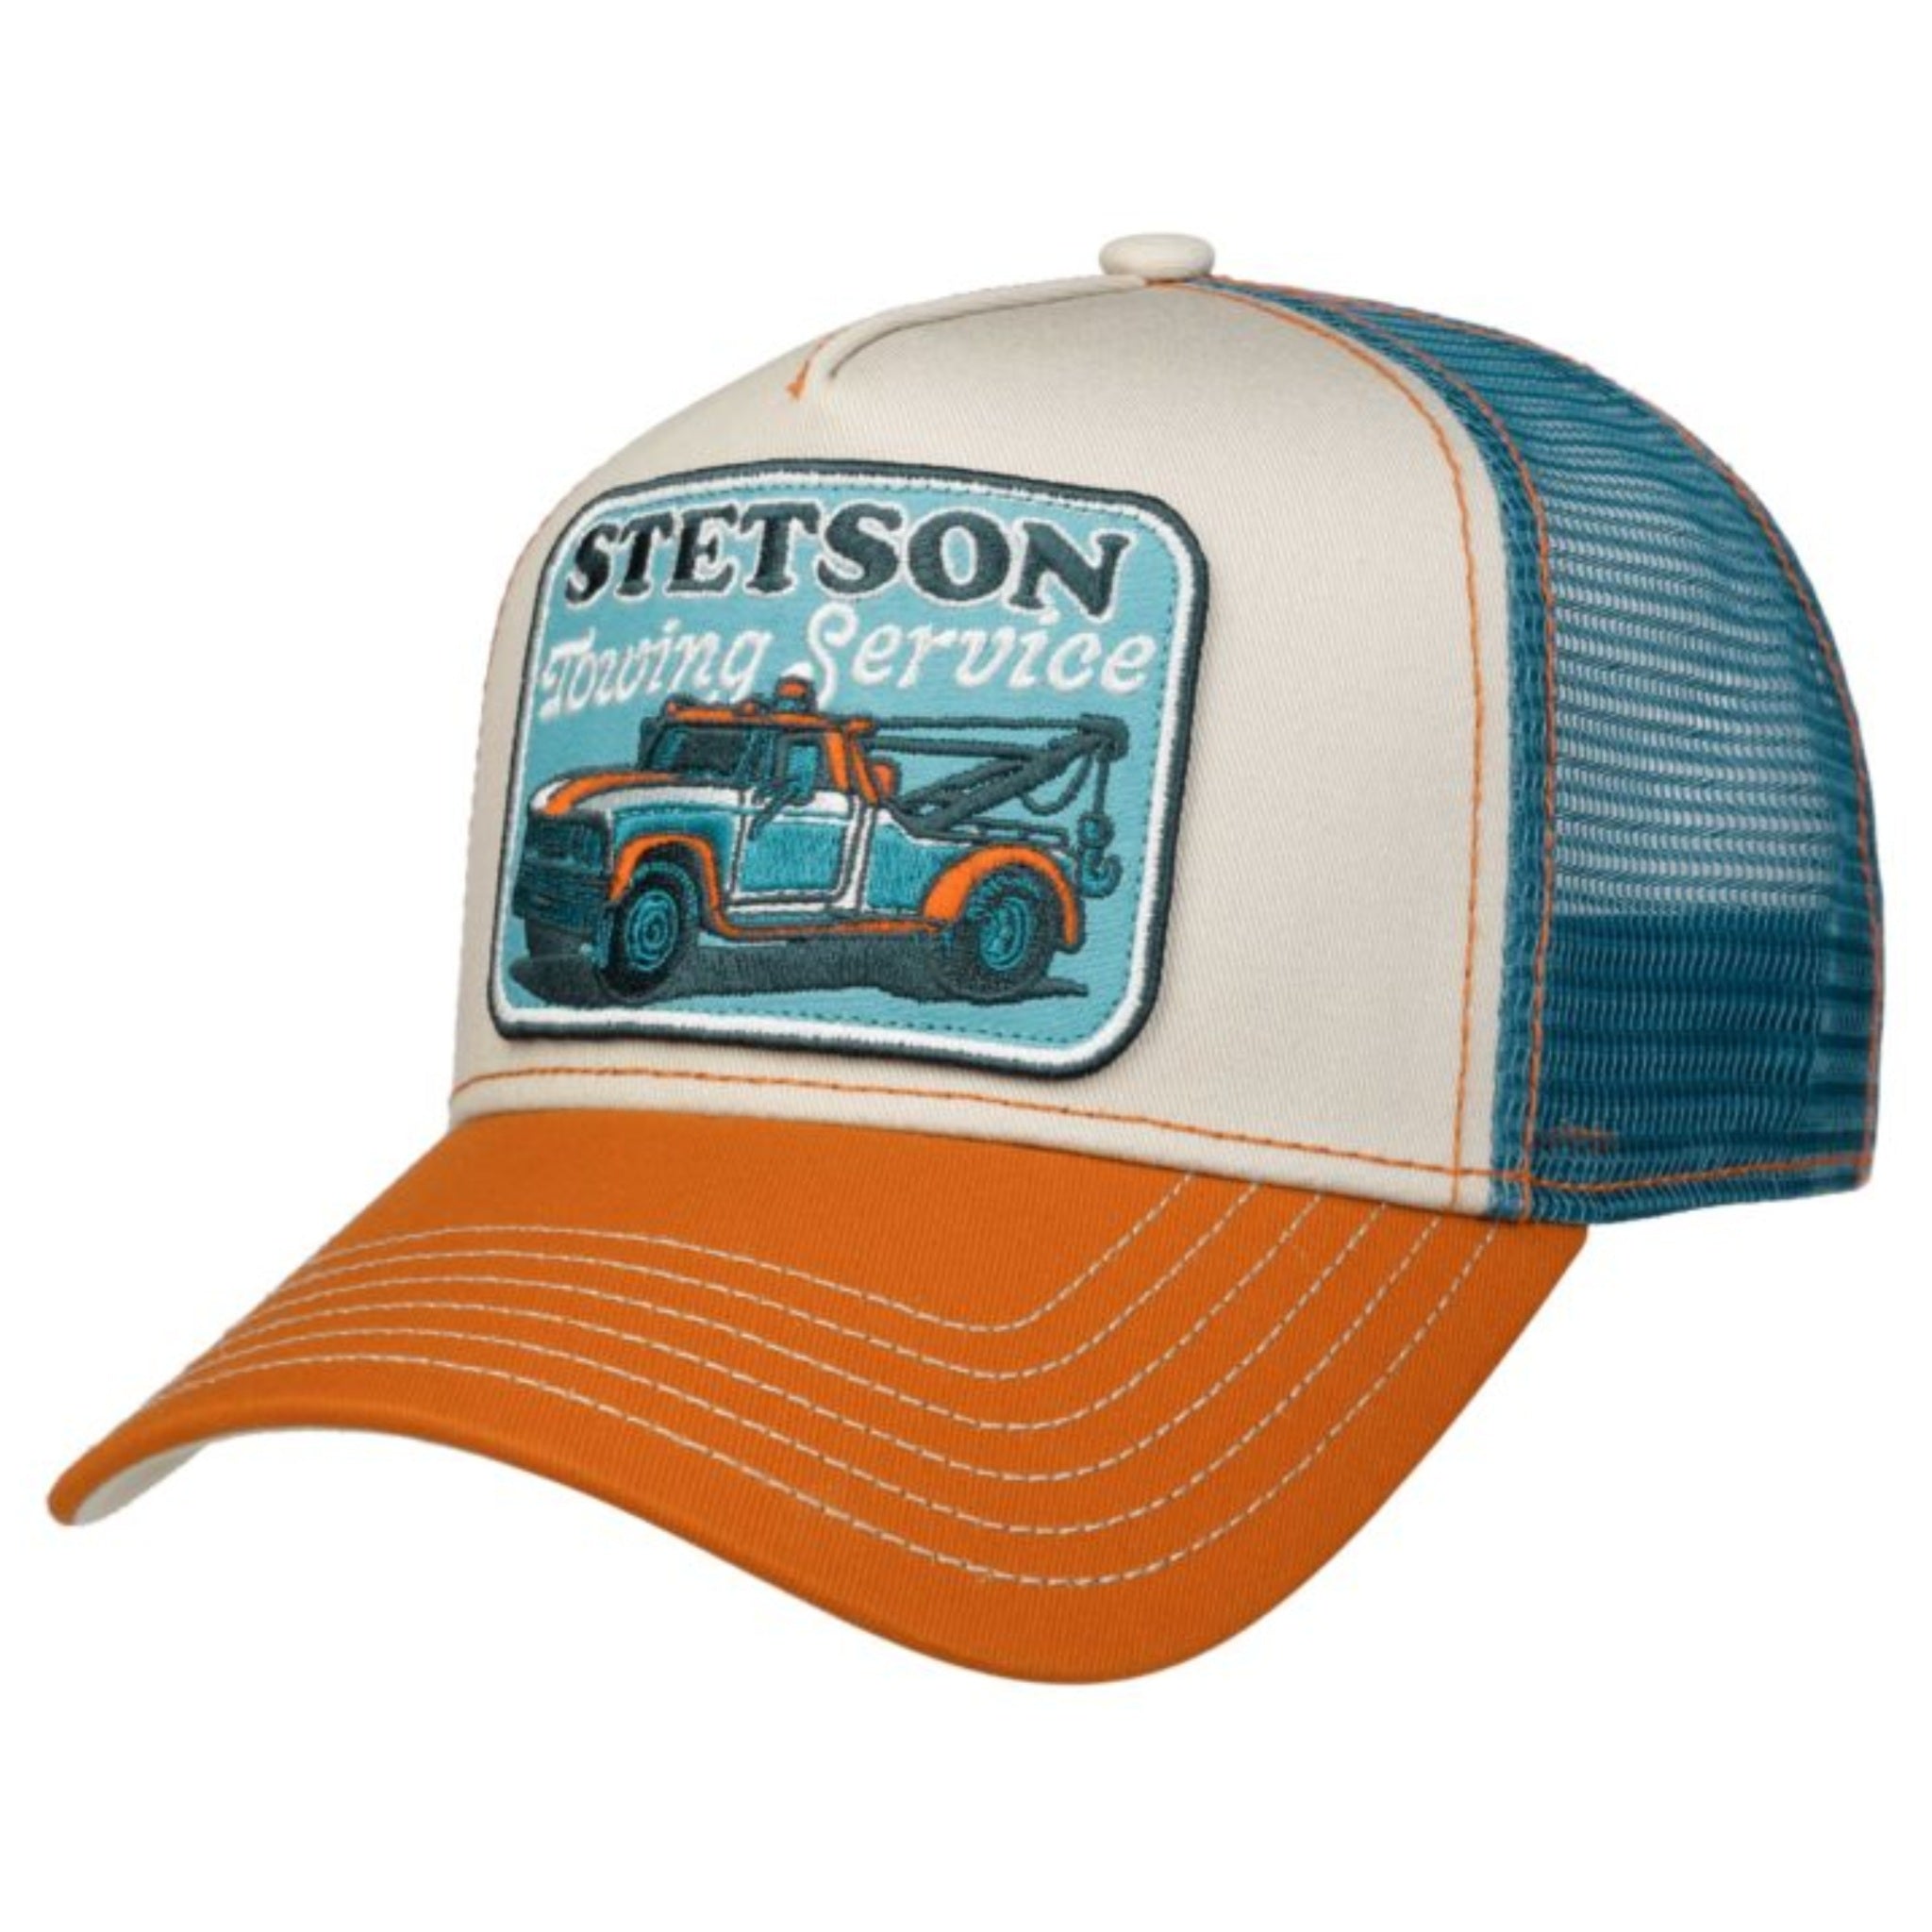 The Hat Shop Stetson Garage Trucker Cap